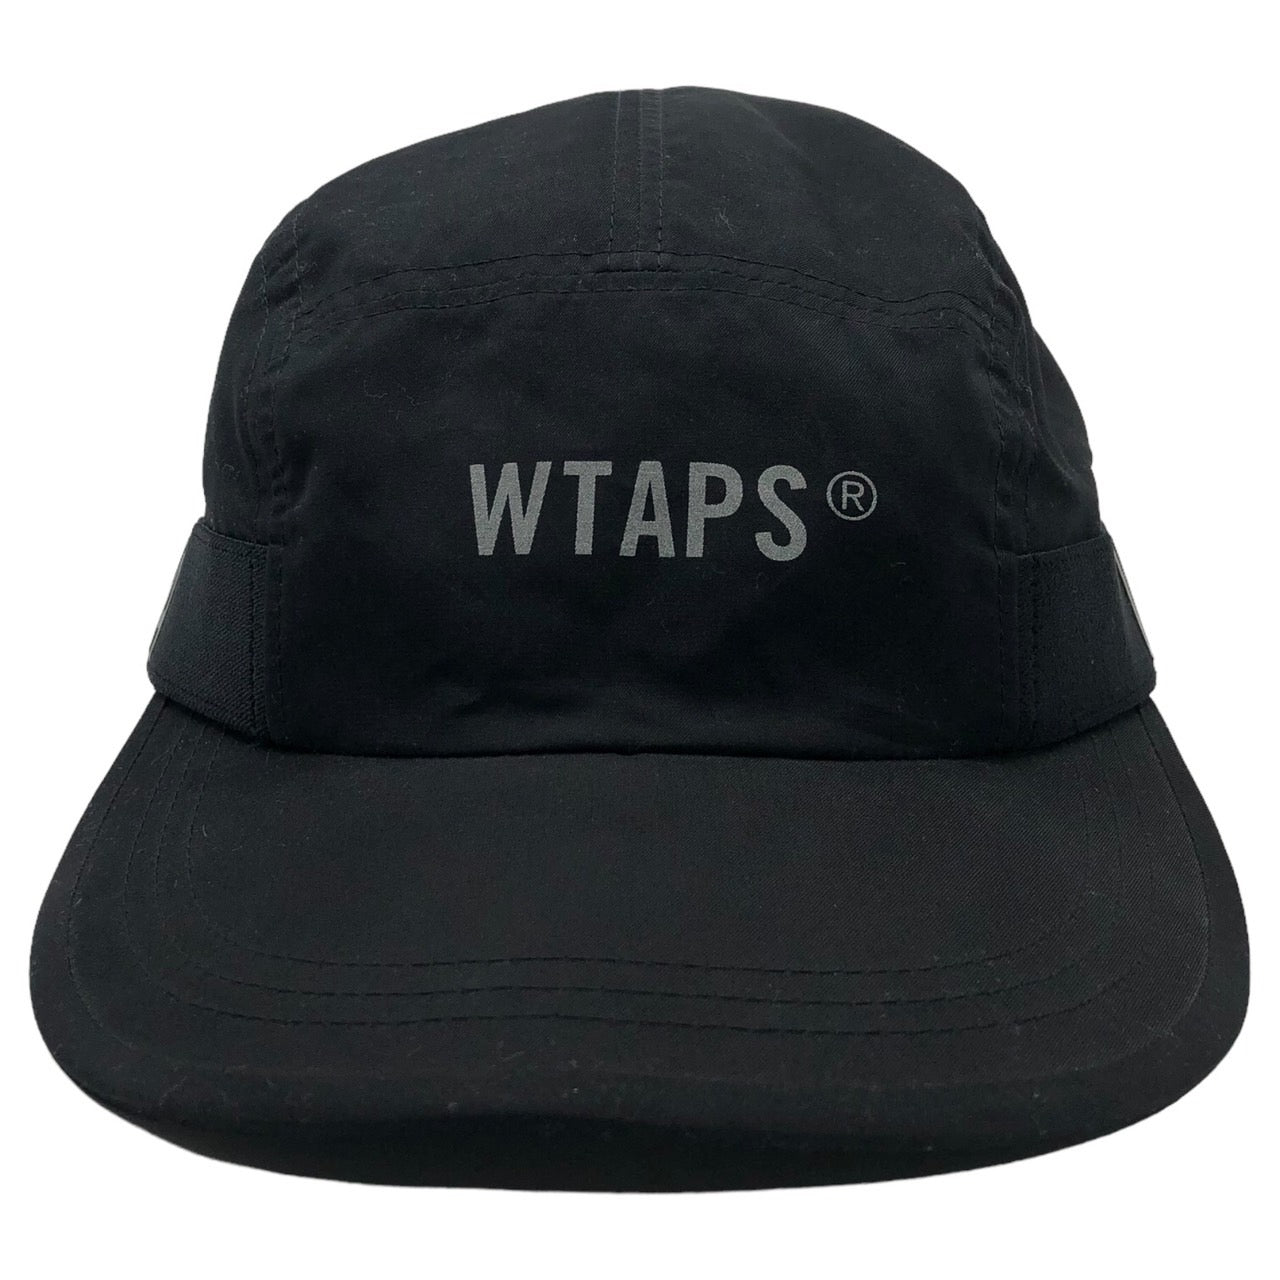 WTAPS(ダブルタップス) T-7. NYPO. TWILL ナイロン ロゴ キャップ 帽子 